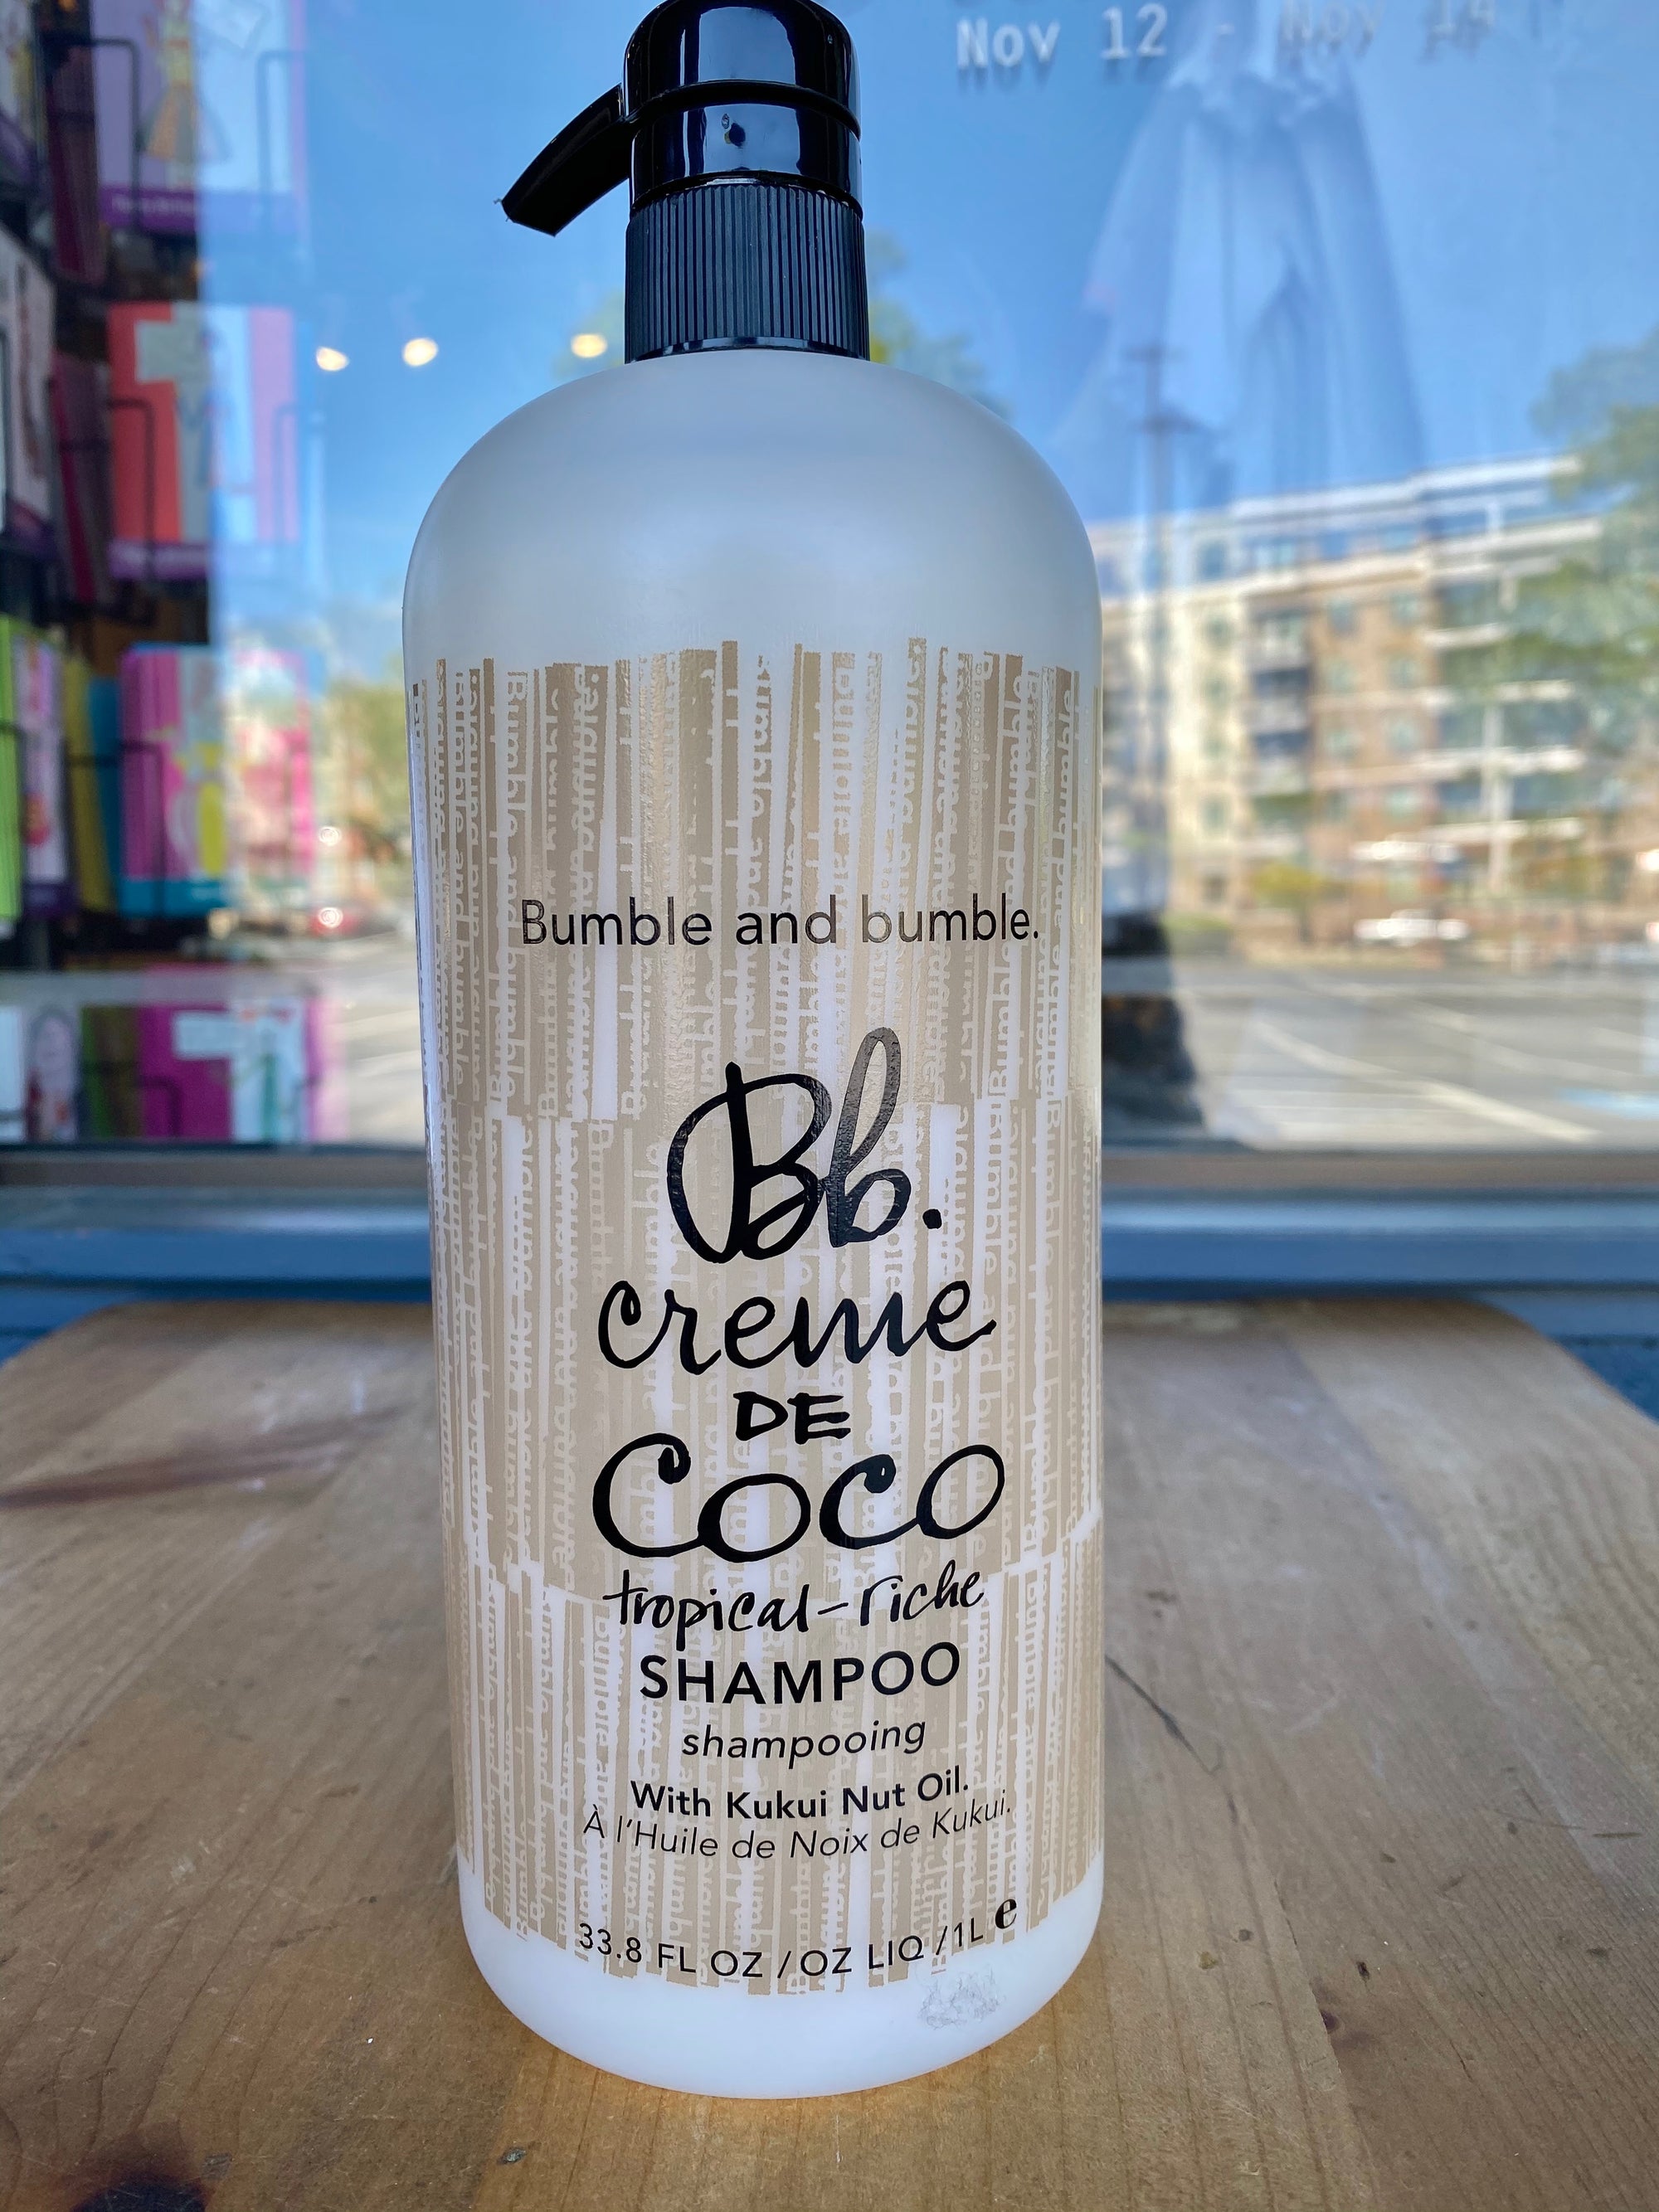 Creme De Coco Shampoo